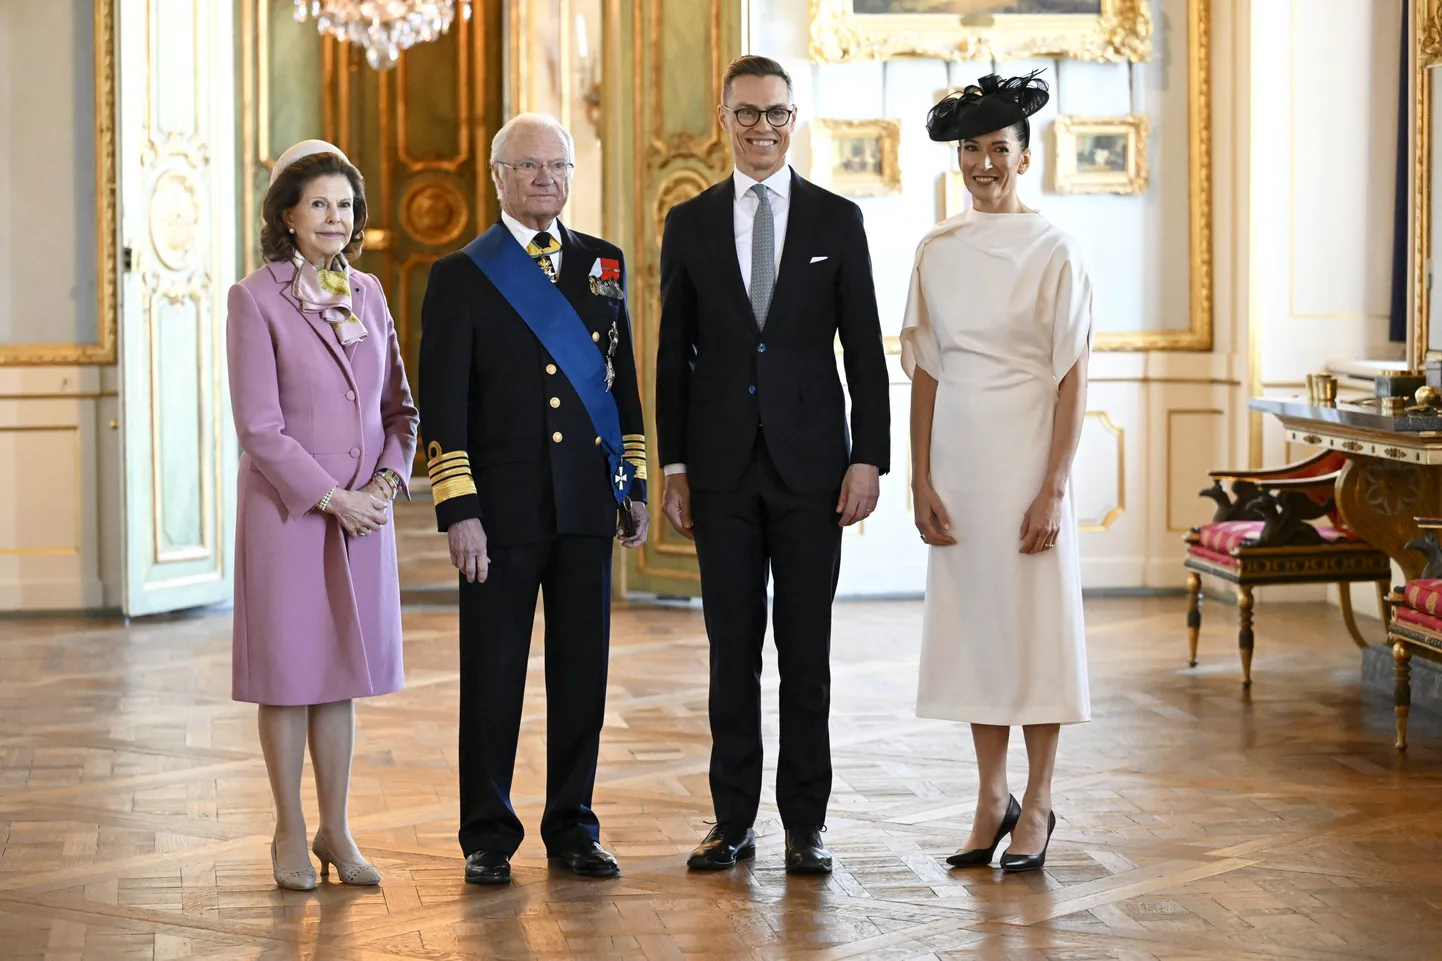 Rootsi kuninganna Silvia, kuningas Carl XVI Gustaf, Soome president Alexander Stubb ja tema abikaasa Suzanne Innes-Stubb Stockholmi kuningalossis.